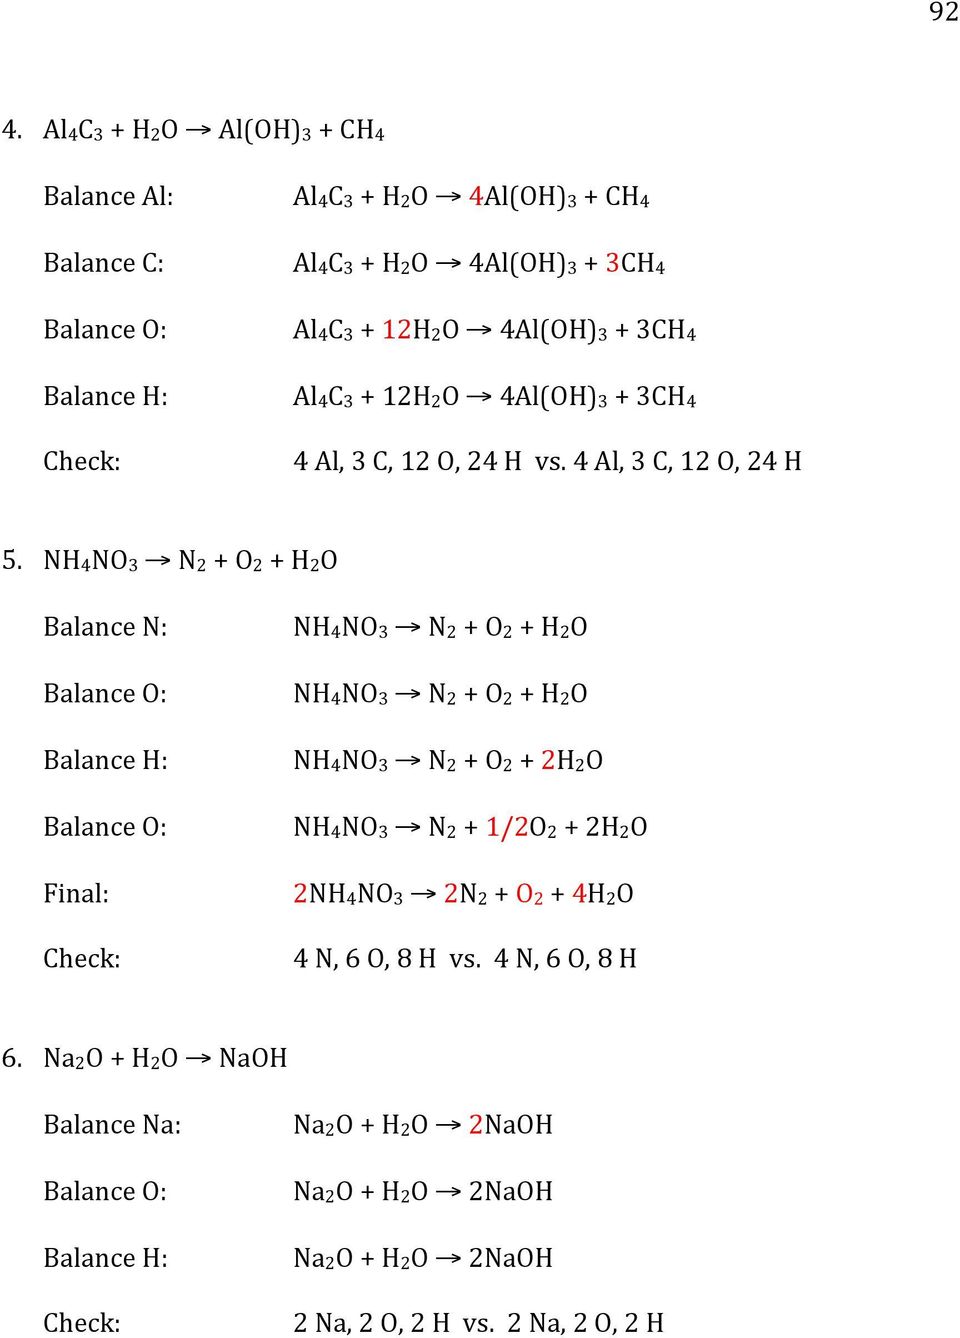 NH4NO3 N2 + O2 + H2O Balance N: Balance H: Final: NH4NO3 N2 + O2 + H2O NH4NO3 N2 + O2 + H2O NH4NO3 N2 + O2 + 2H2O NH4NO3 N2 + 1/2O2 + 2H2O